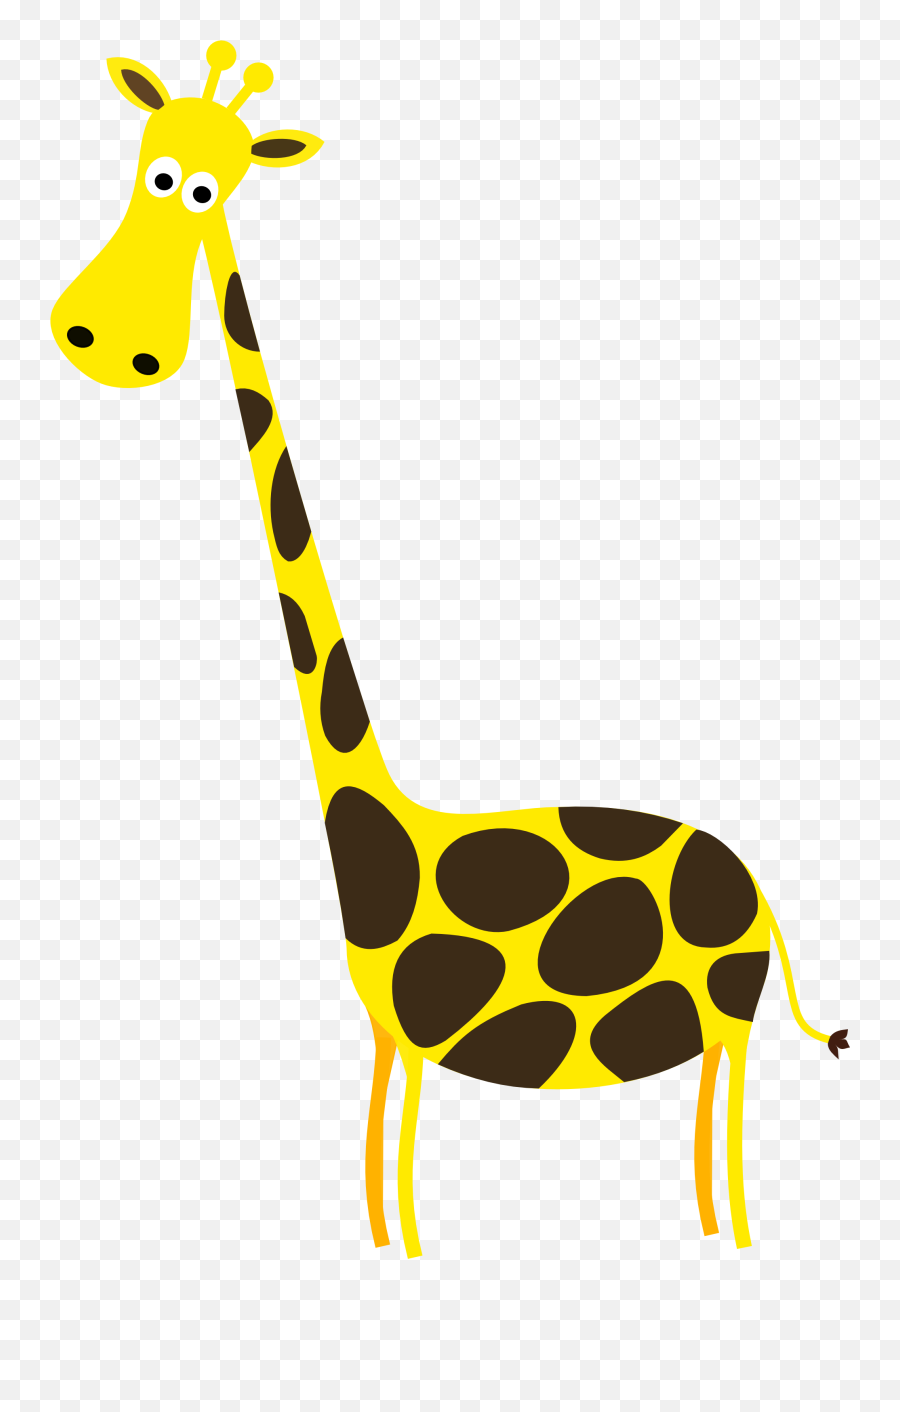 Giraffe Png Transparent Images - Giraffe Clipart Transparent Background,Giraffe Transparent Background